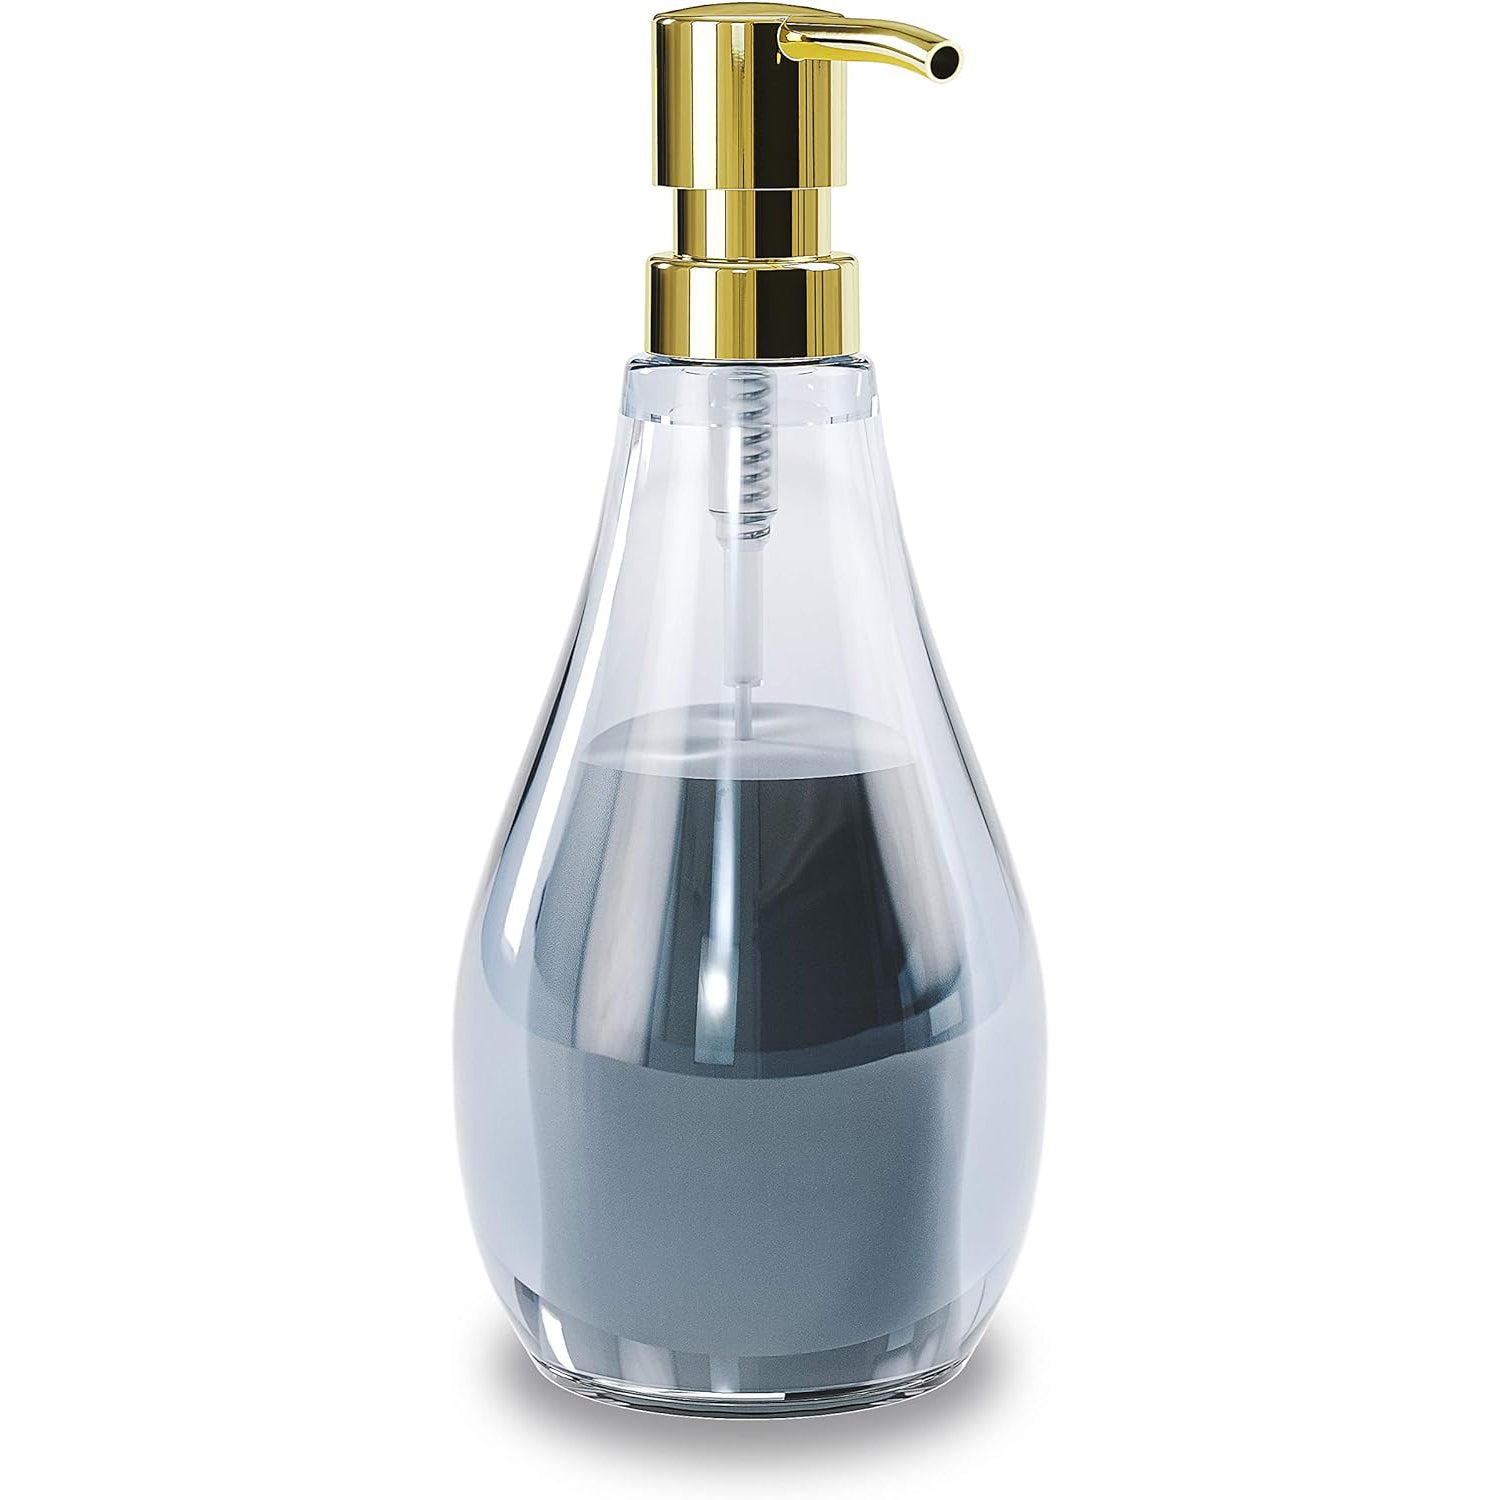 Umbra Droplet Soap Pump – Clear Denim